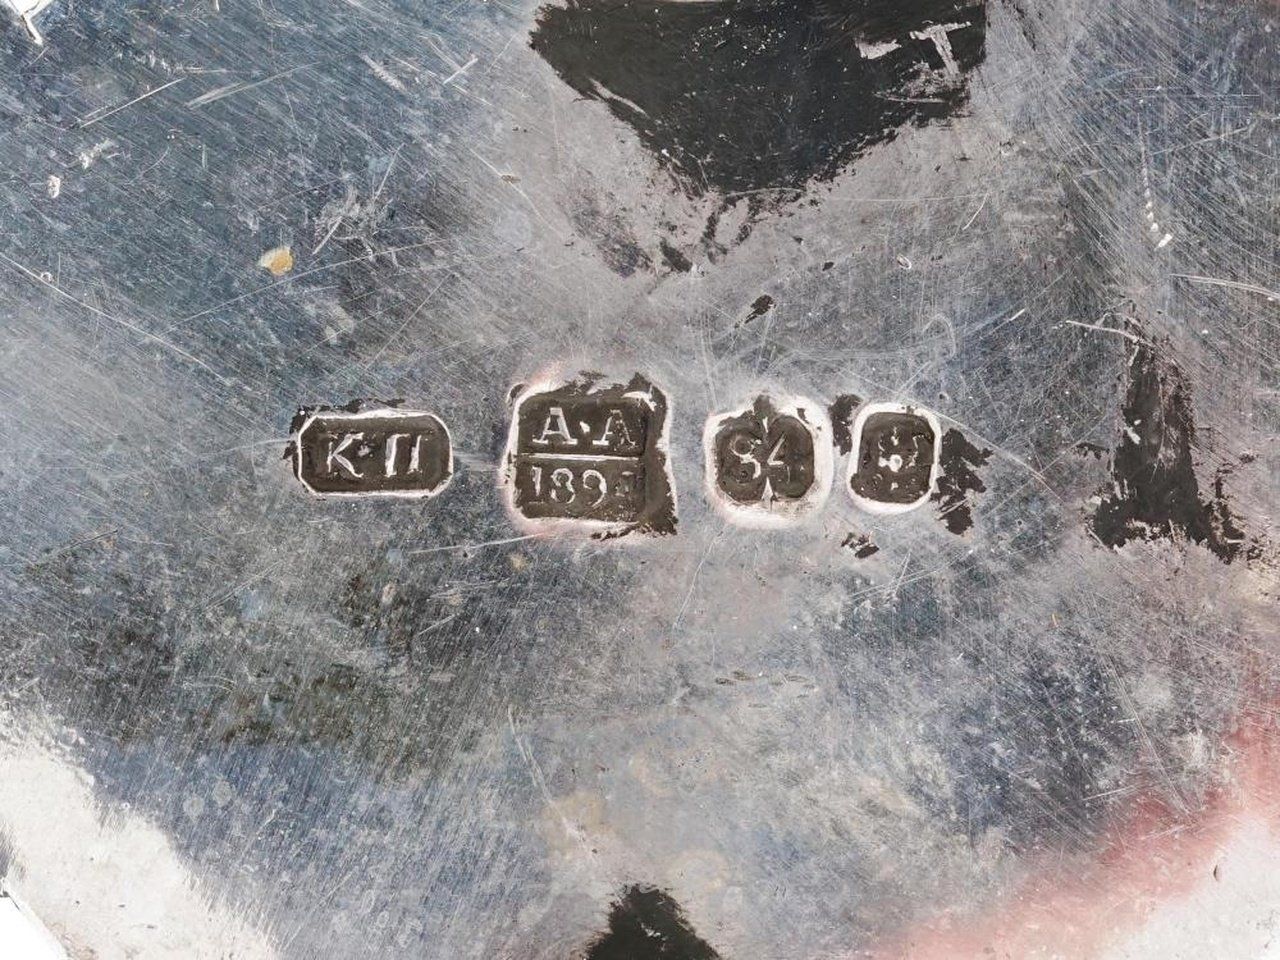 Русское серебро , Русский серебряный комплект из двух ароматных шкатулок на подставке.